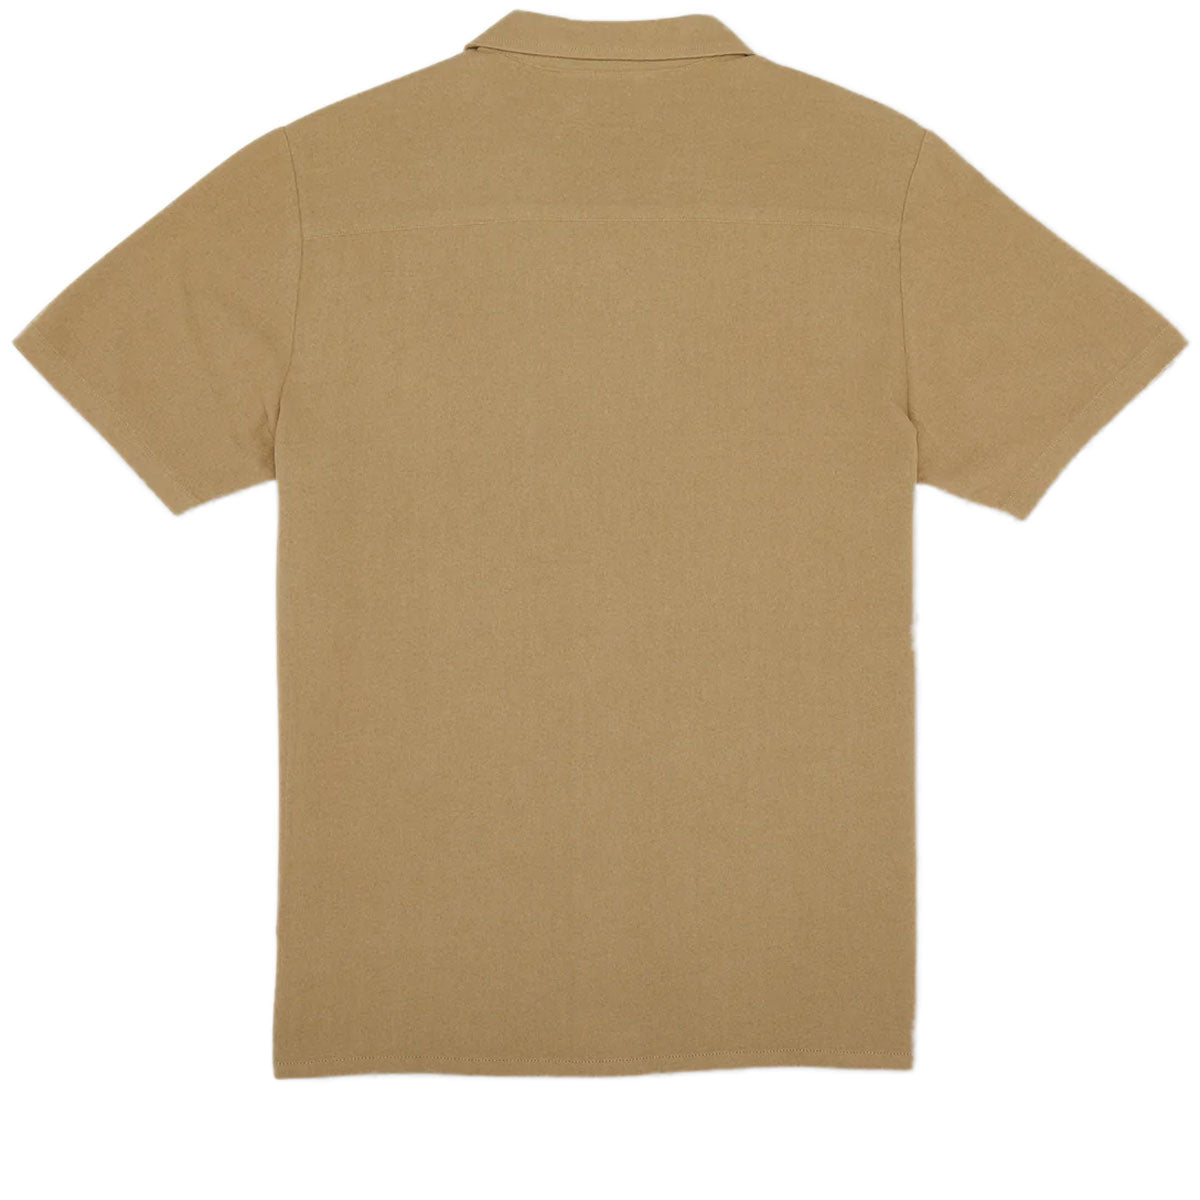 Volcom Hobarstone Shirt - Sand Brown image 2